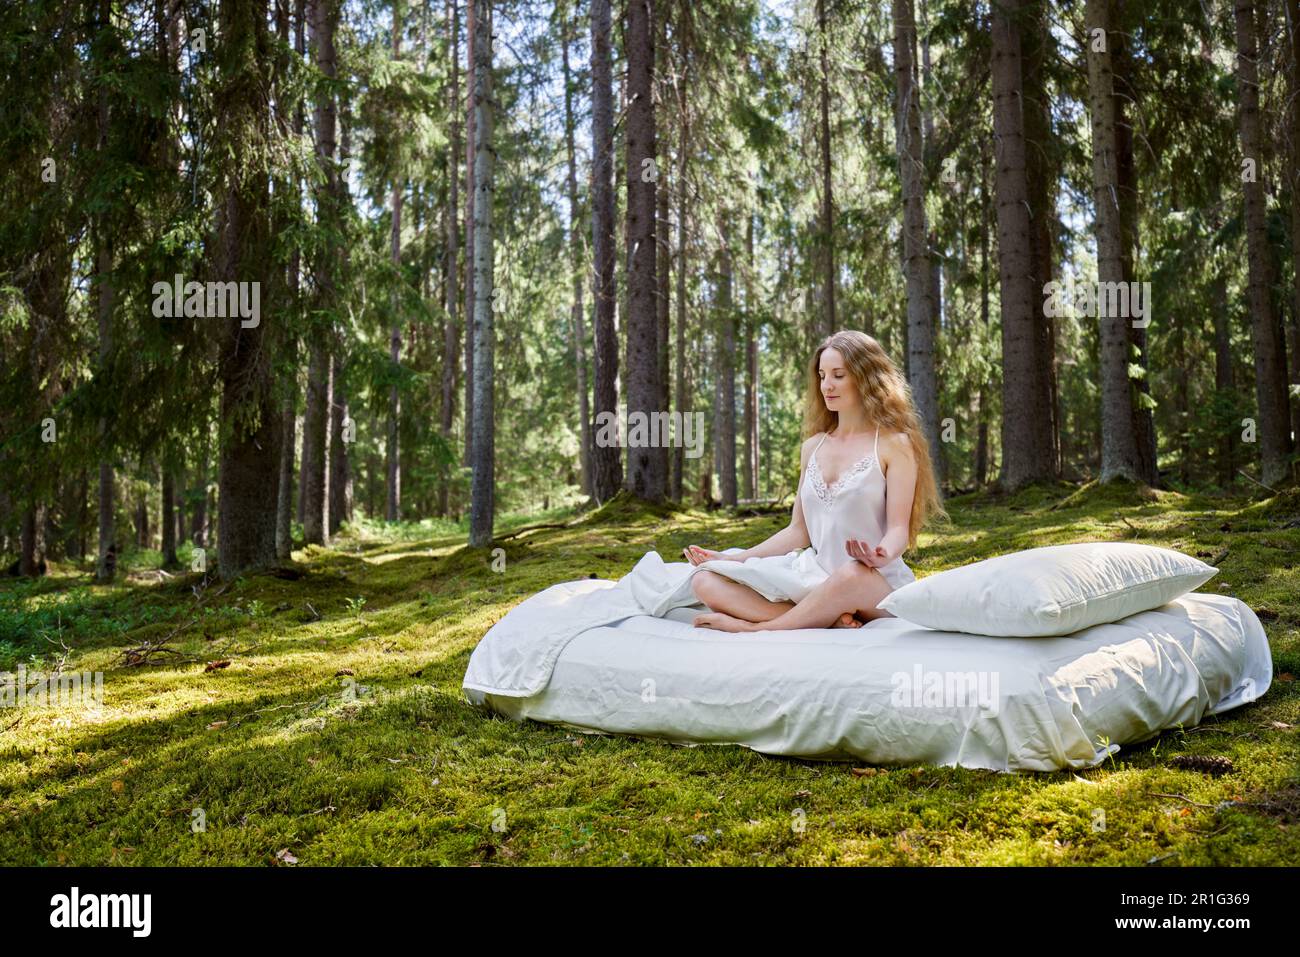 La jeune femme se repose sur un matelas en forêt estivale. La fille dort dans les bois Banque D'Images